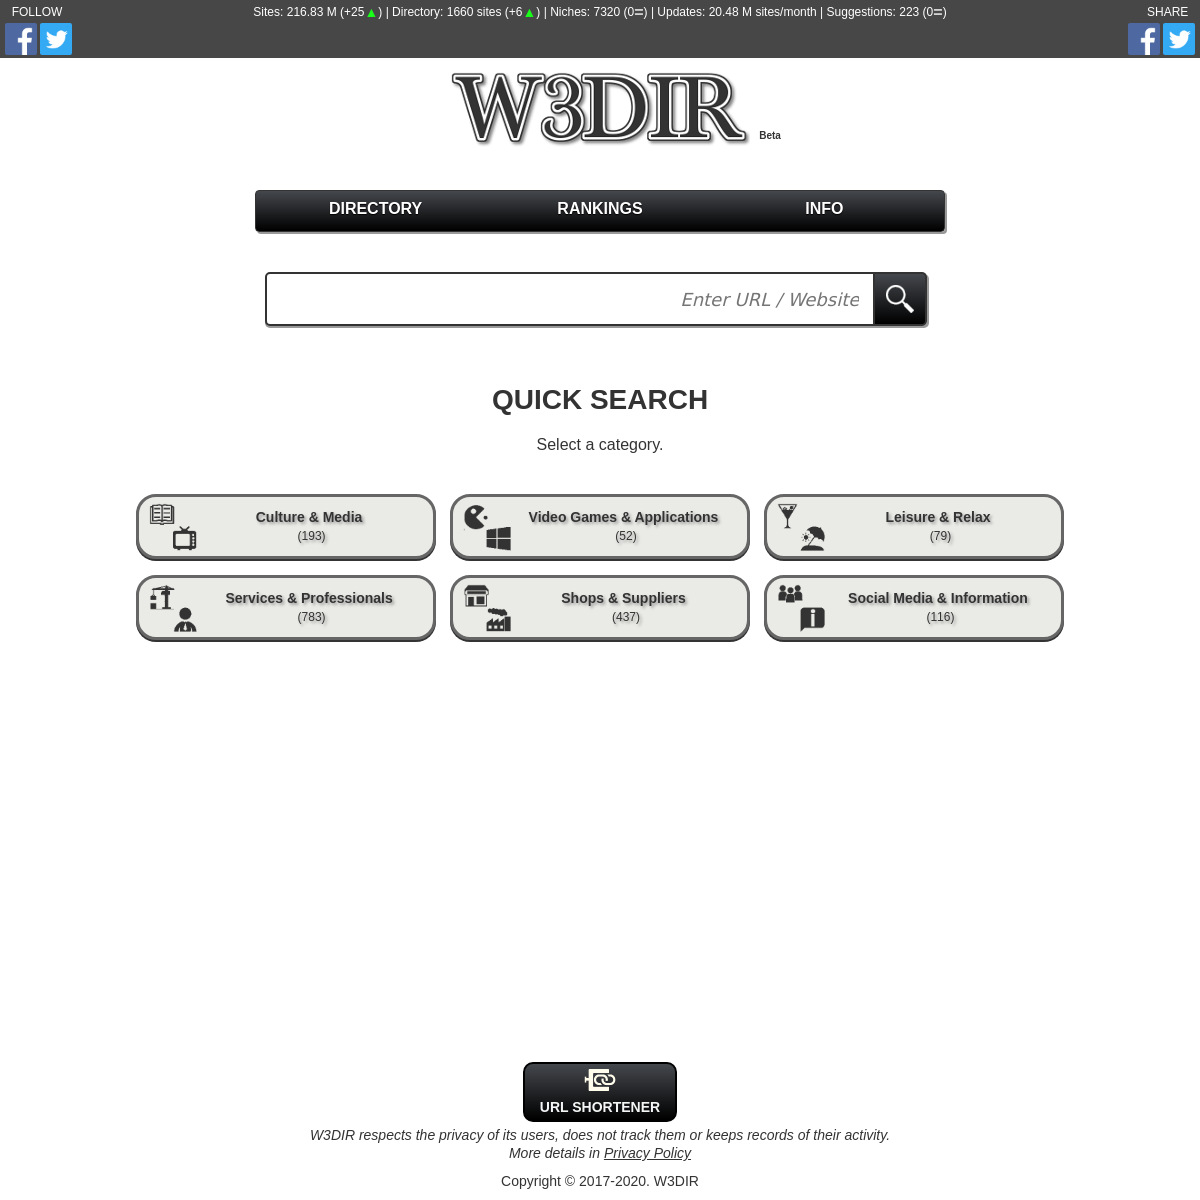 A complete backup of w3dir.com